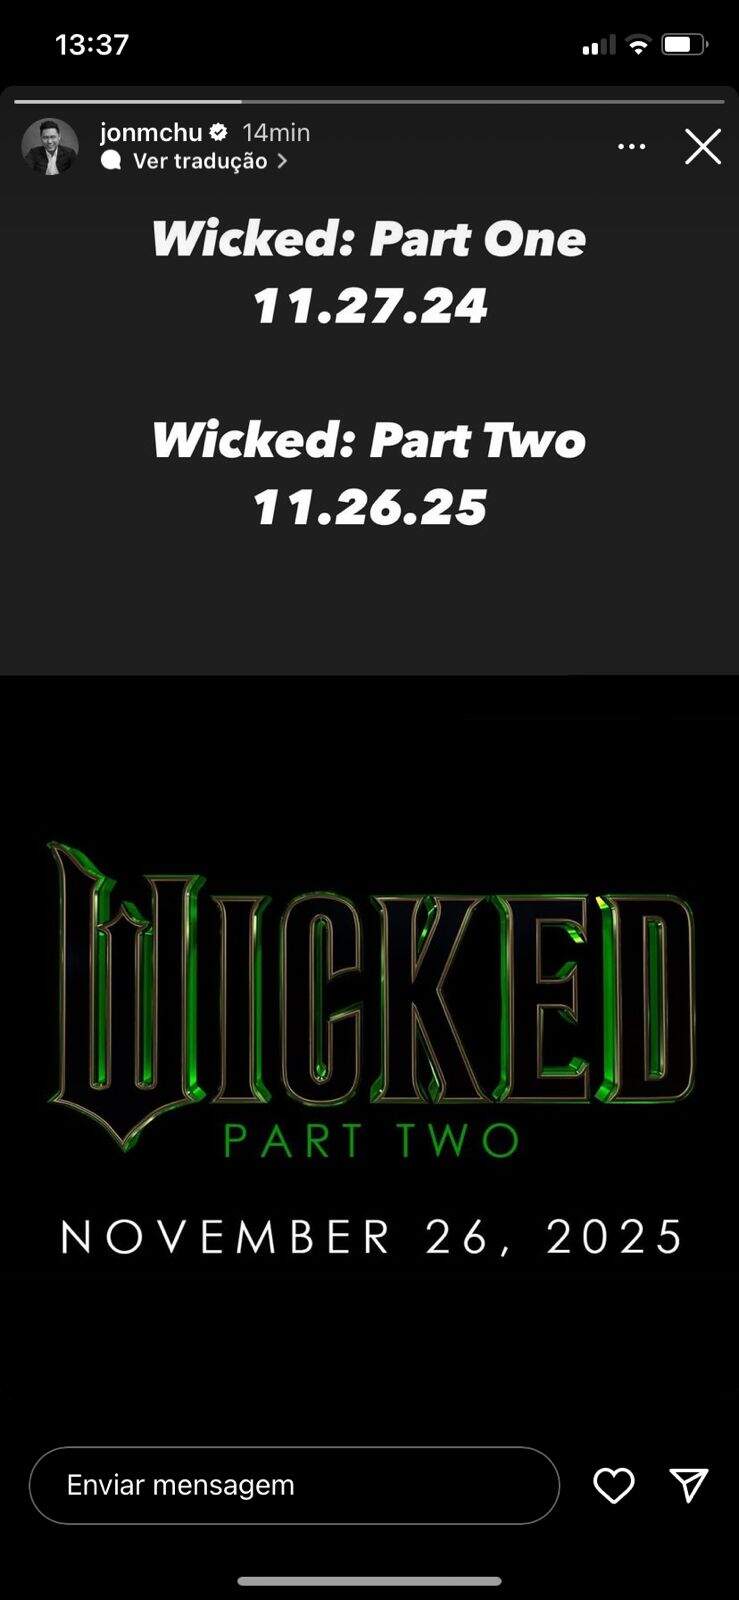 Jon M. Chu confirma as datas de estreia de Wicked - Part One e Wicked - Part Two (Foto: Reprodução/Instagram)